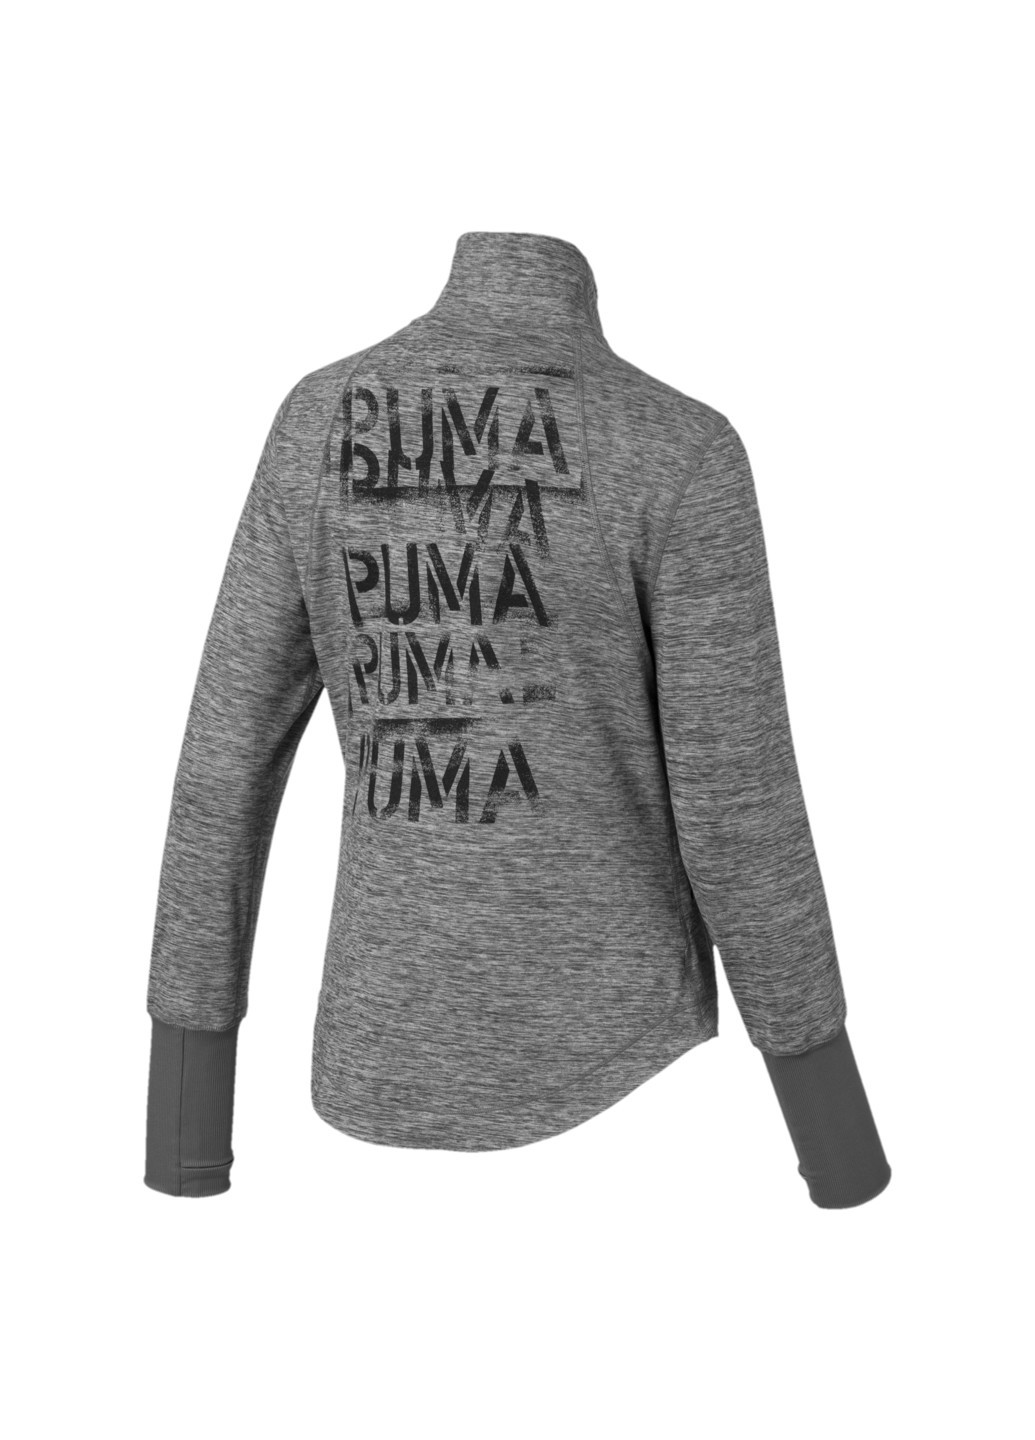 Олимпийка Studio Knit Jacket Puma серая спортивная полиэстер